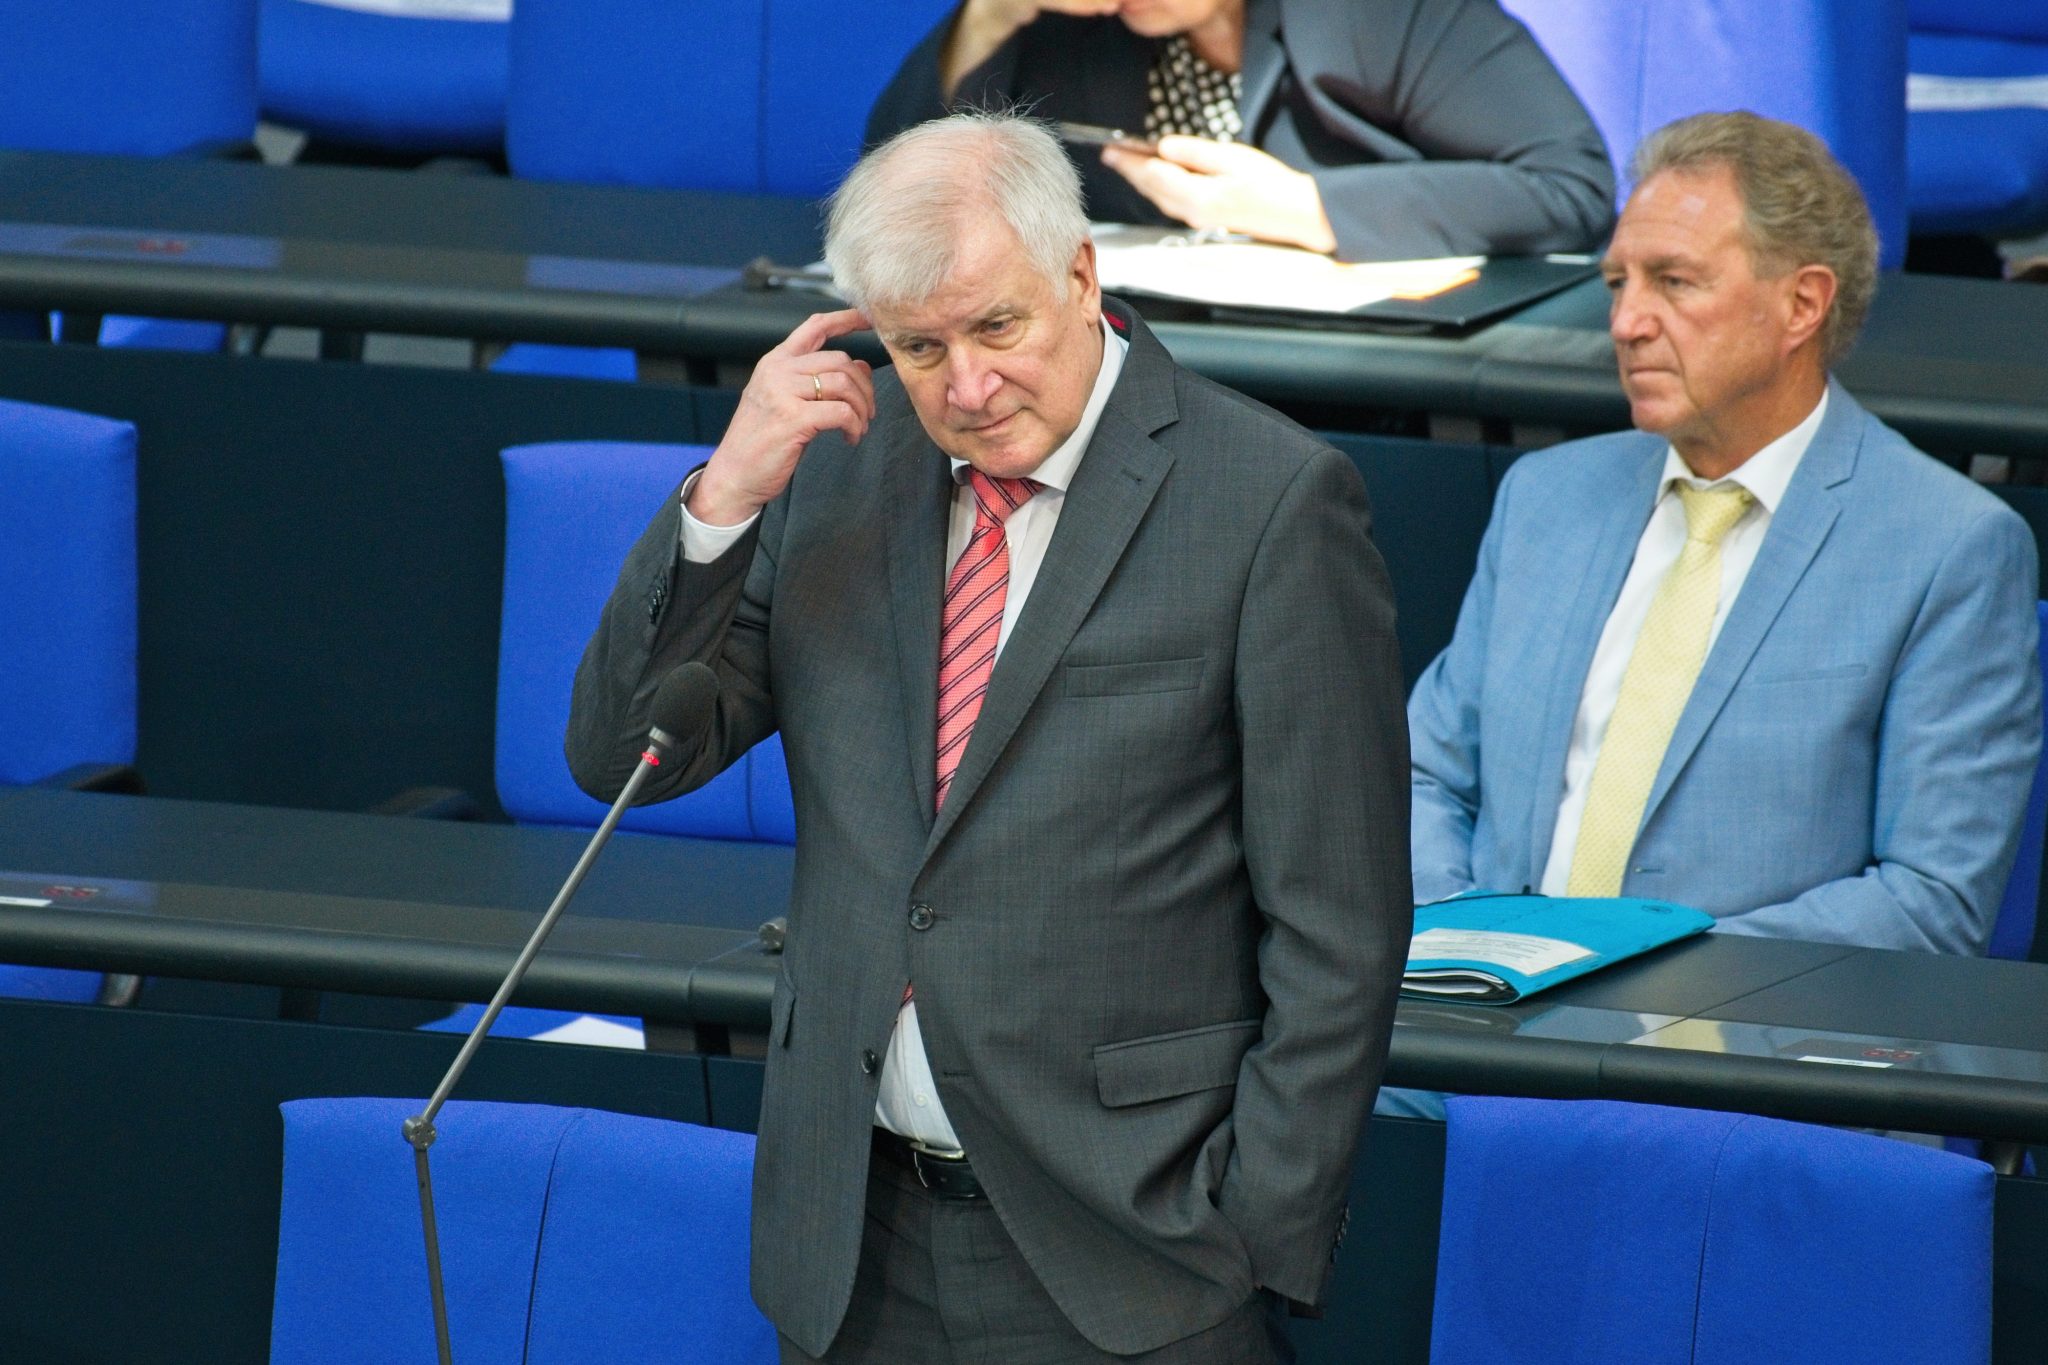 Überdenkt Bundesinnenminister Horst Seehofer (CSU) sein "nein" zur Polizeistudie schon? Foto: picture alliance / Eibner-Pressefoto